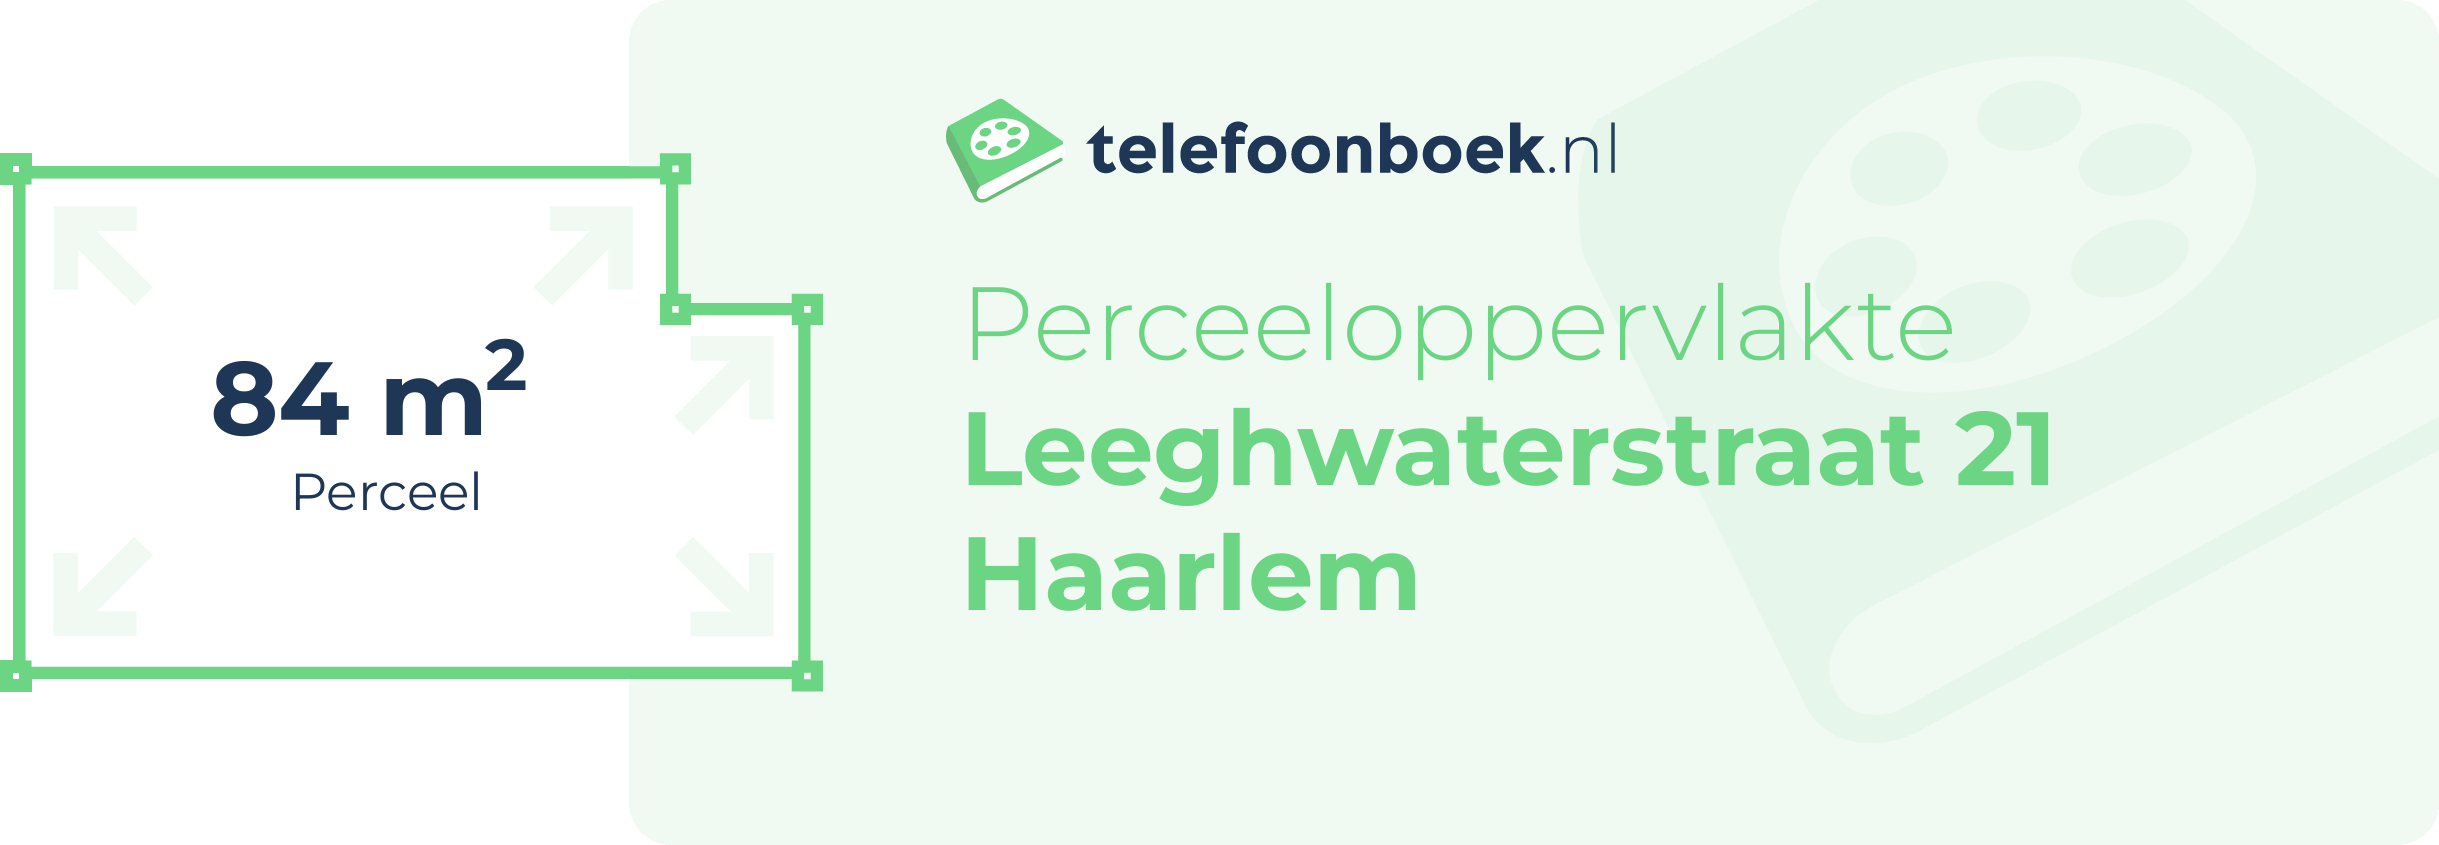 Perceeloppervlakte Leeghwaterstraat 21 Haarlem